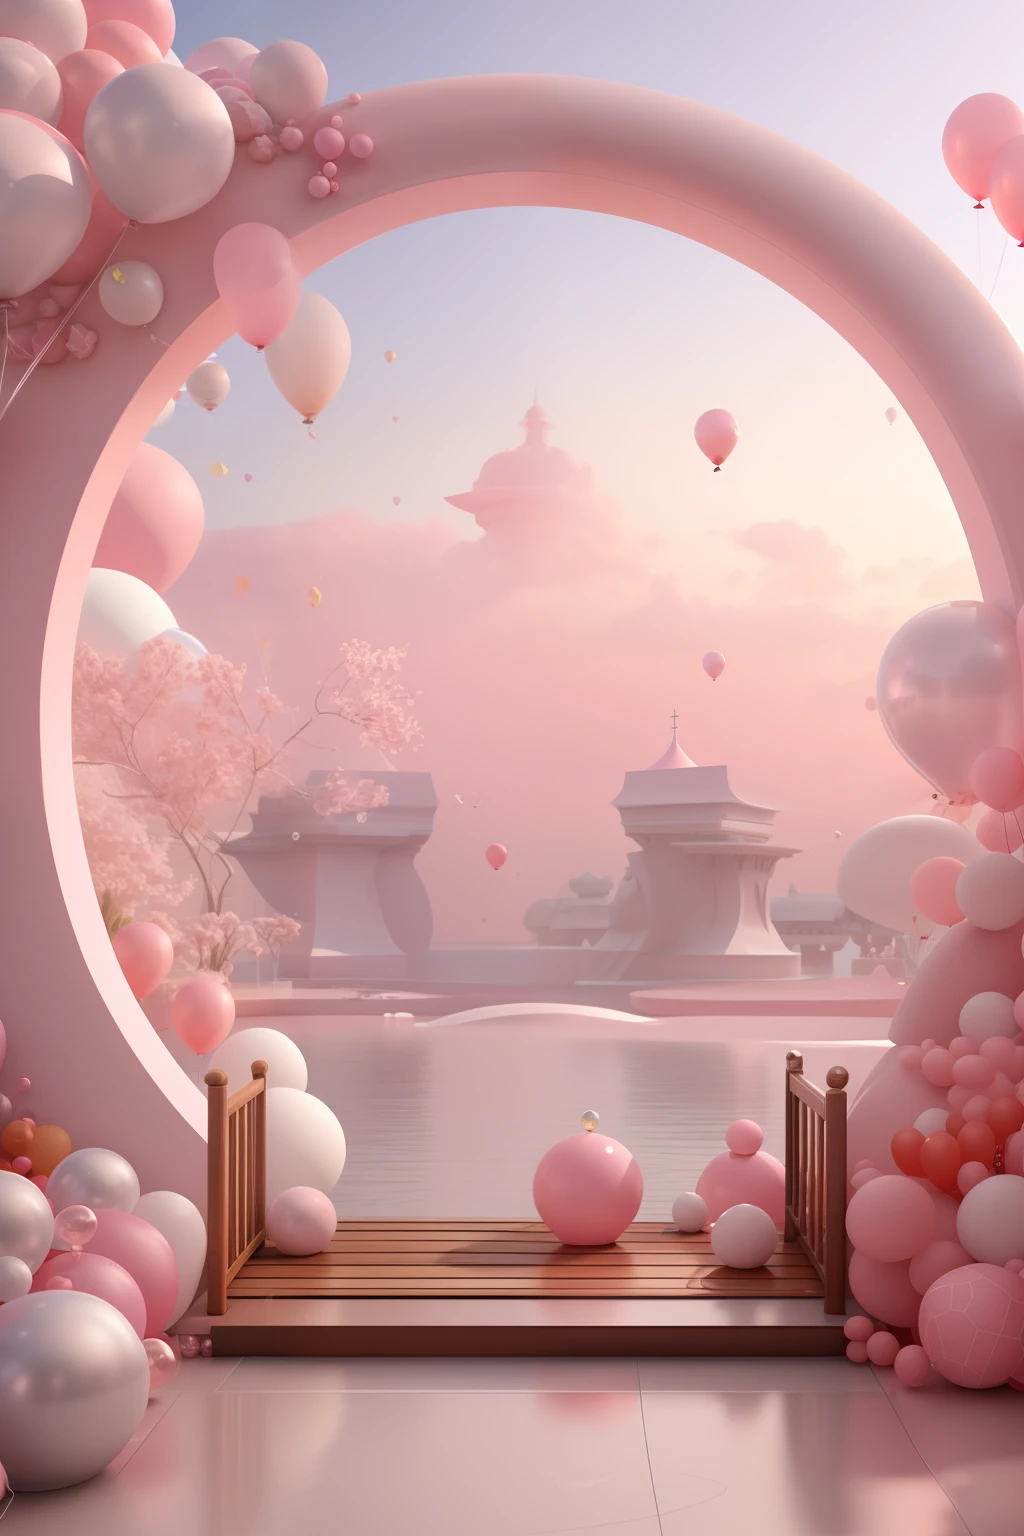 Es gibt einen rosa und weißen Bogen，Mit Luftballons und Bänken, rosa Zen-Stil, rosa Landschaft, Traumszenen, Blick auf einen rosafarbenen Ozean, 3D-Rendering stilisiert, 3D-Rendering stilisiert, surreales 3D-Rendering, sprudelnde Landschaft, Surreale Traumlandschaft, 3D-Stilisierte Szene, Stilisiert als 3D-Rendering, verträumte Atmosphäre und Drama